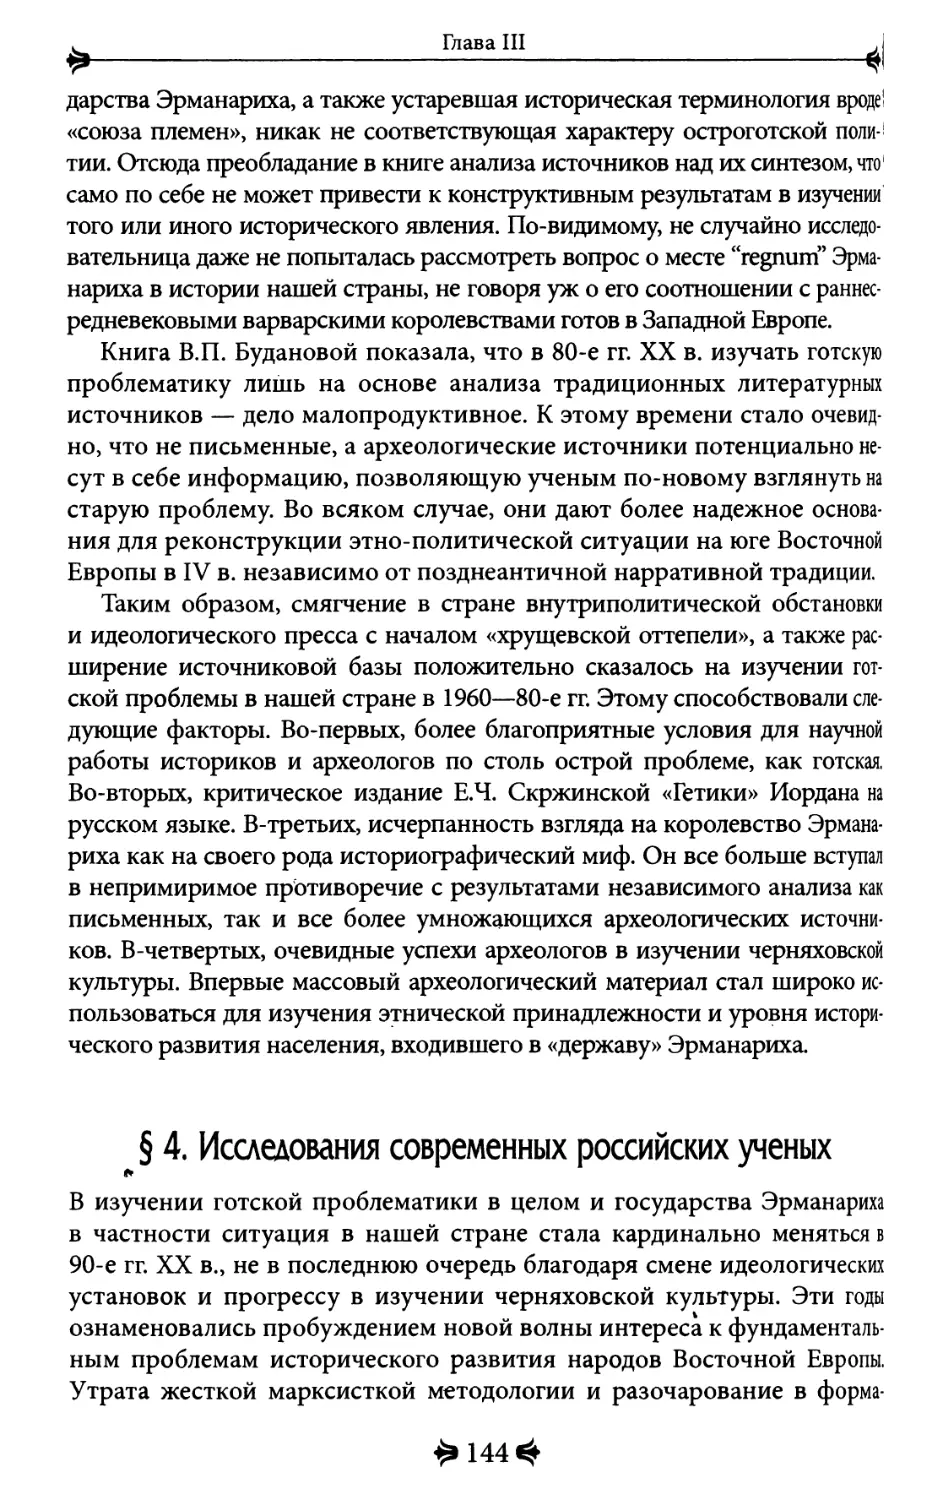 4. Исследования современных российских ученых